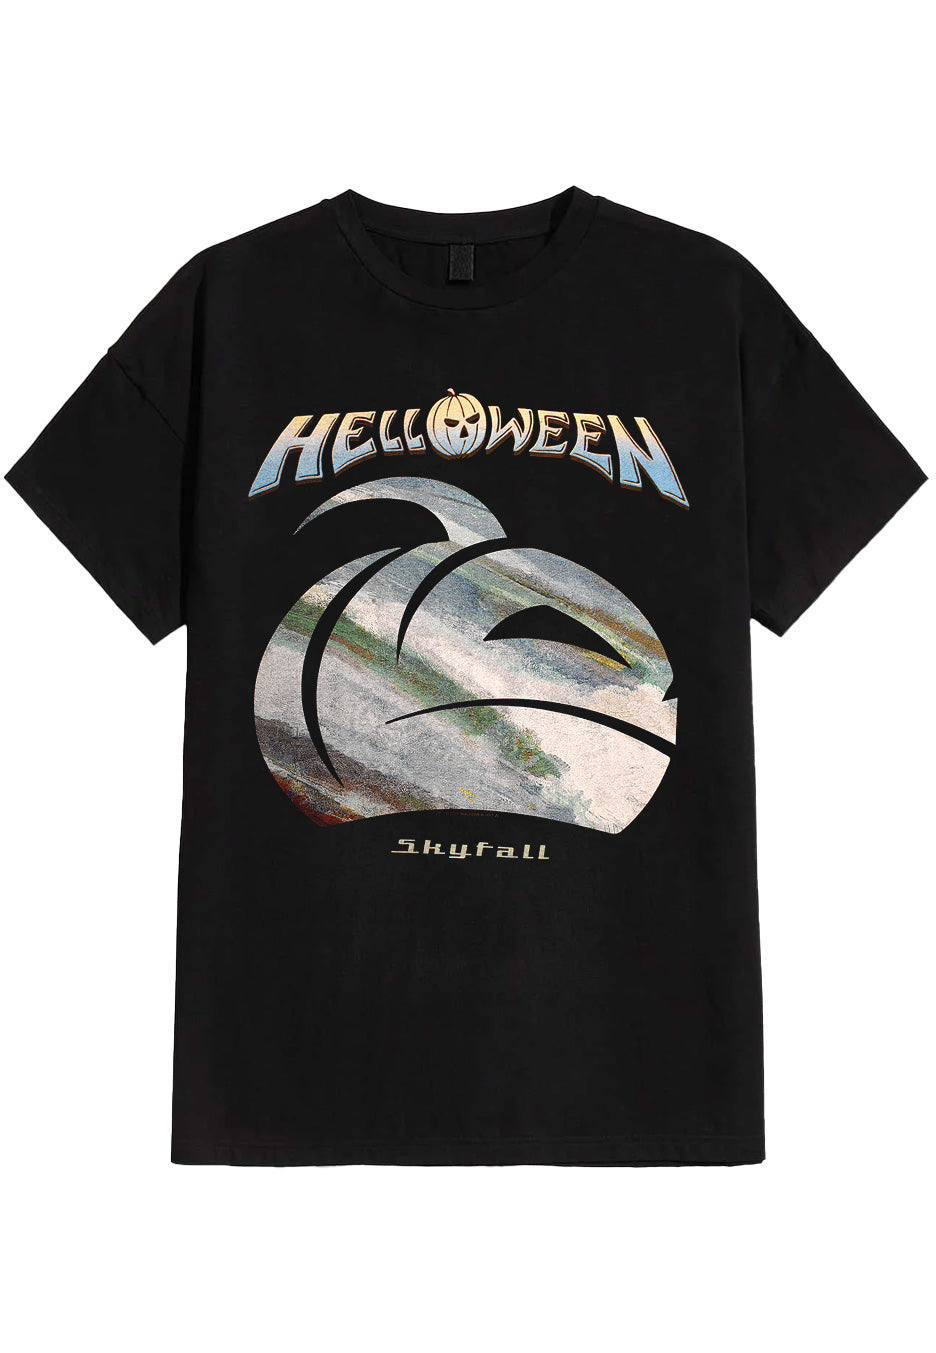 Helloween - Skyfall Pumpkin - T-Shirt